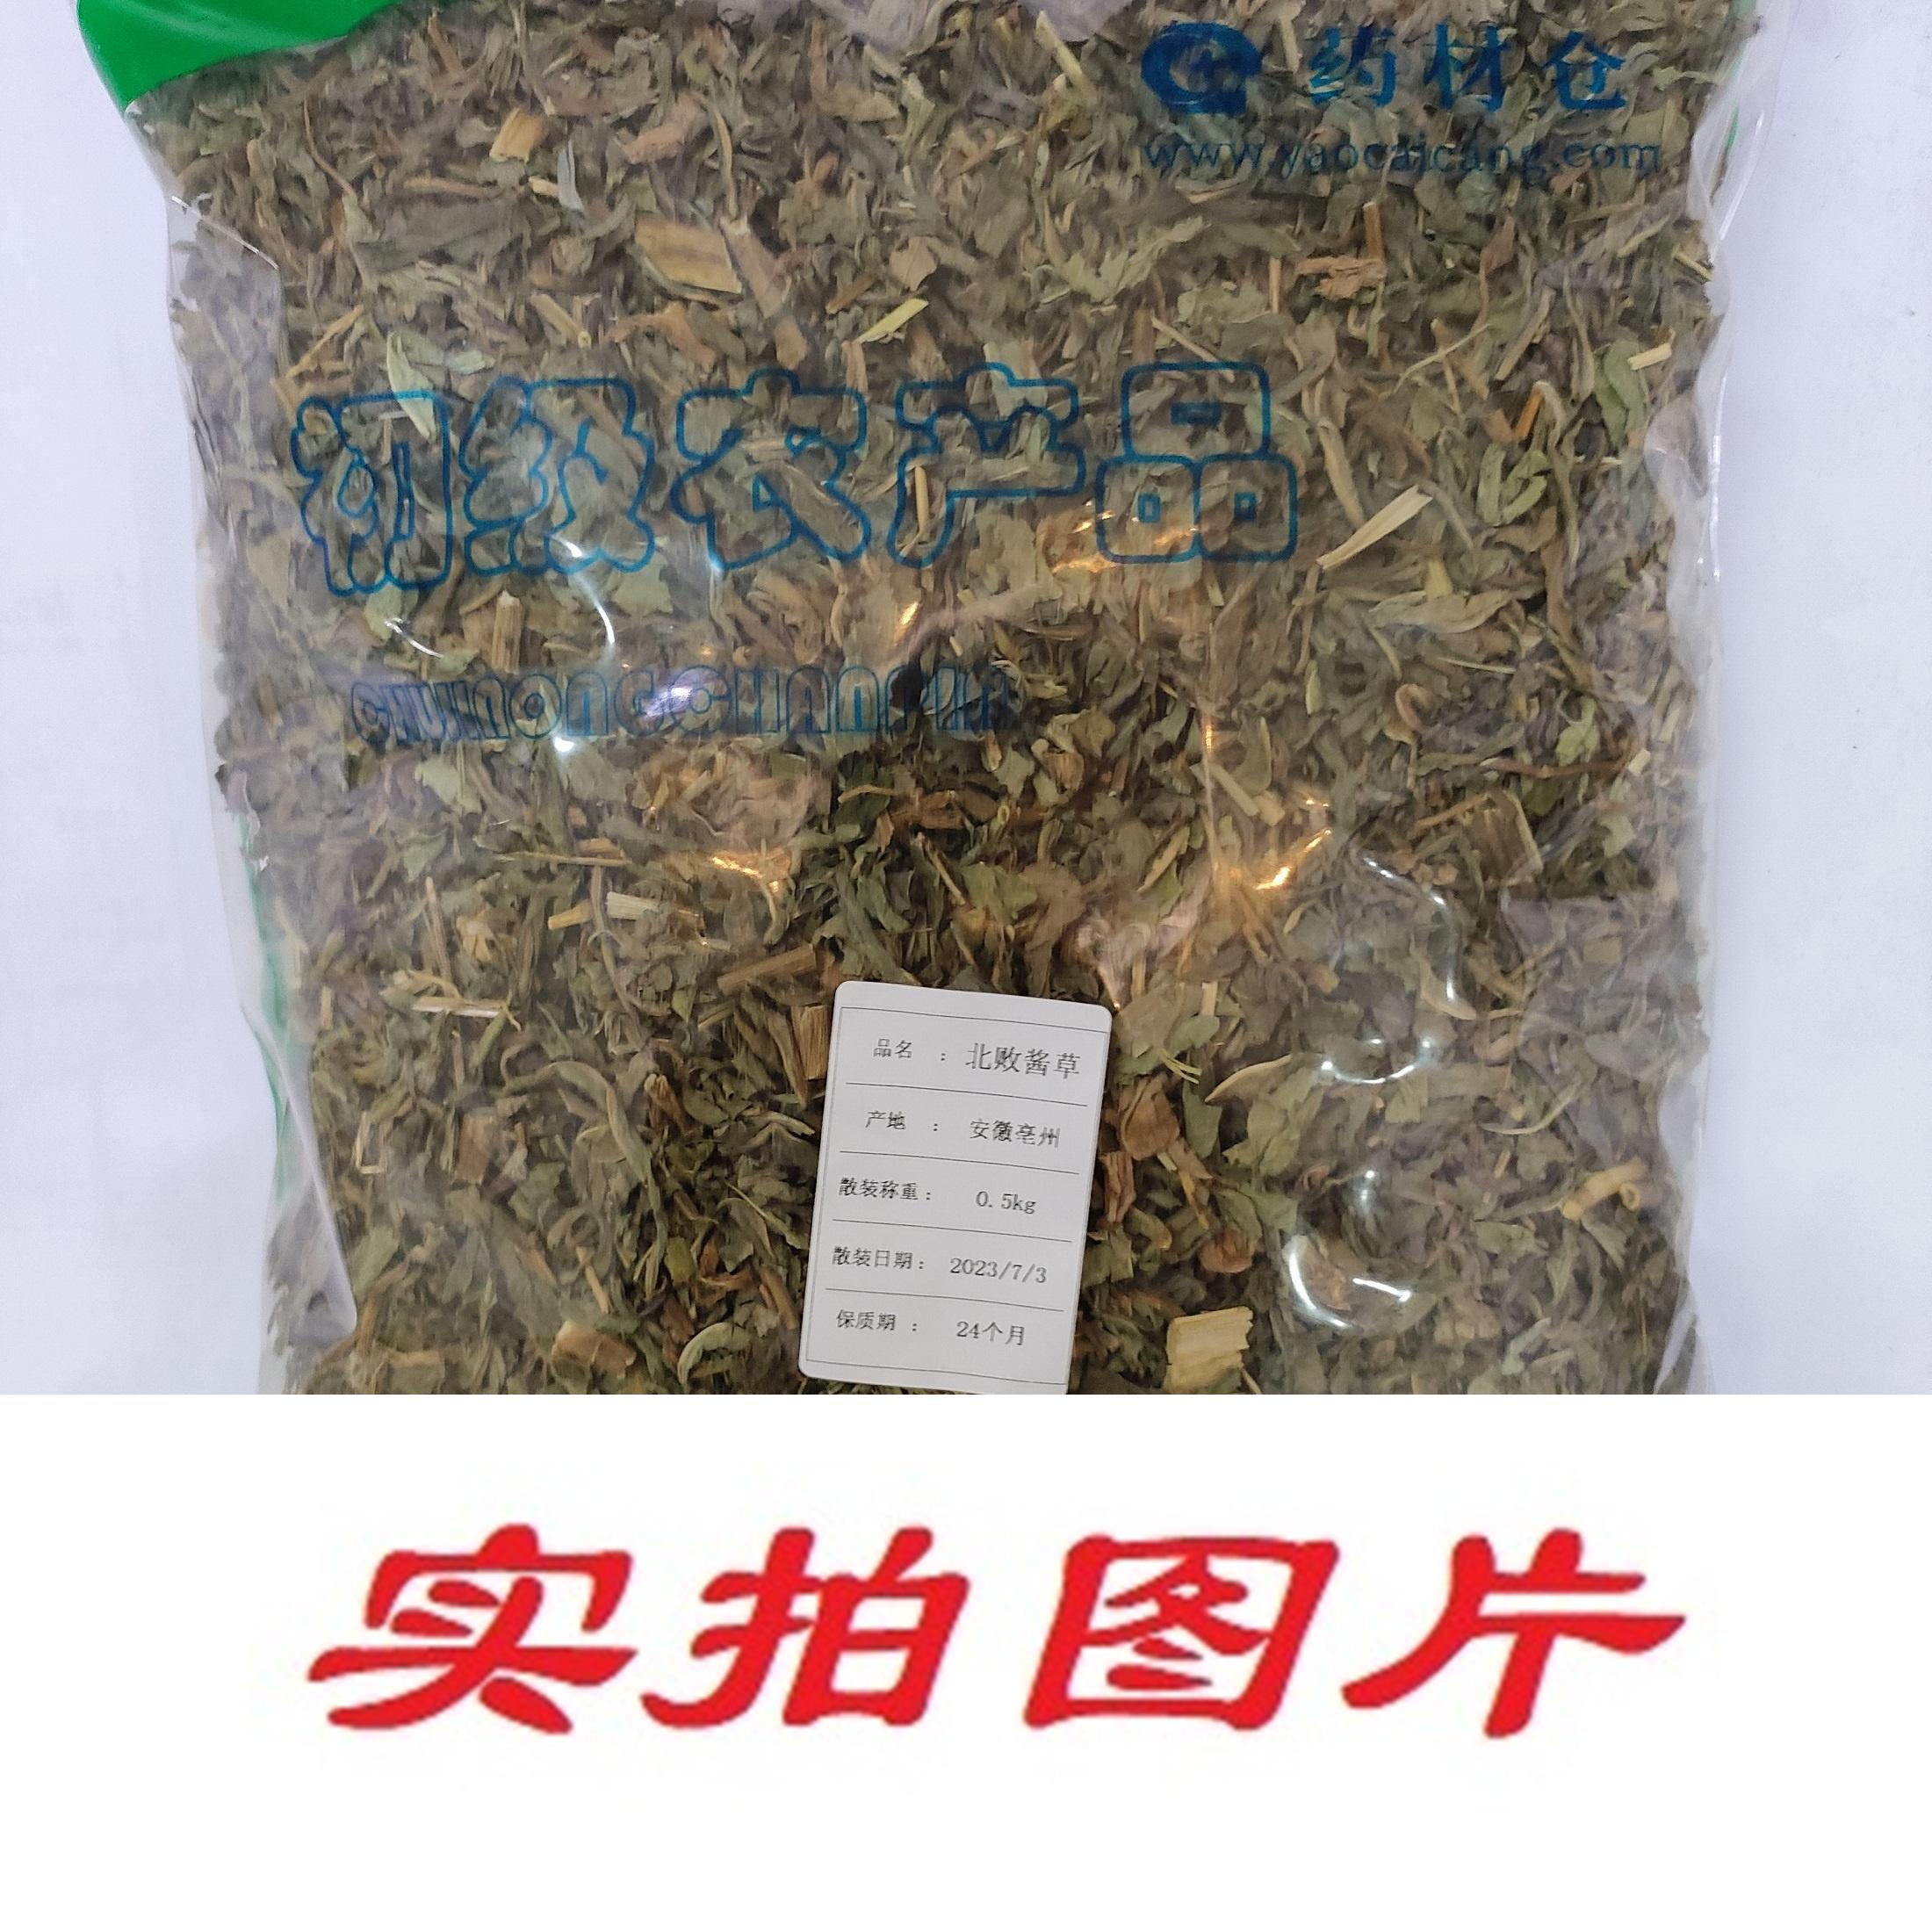 【】北败酱草0.5kg-农副产品